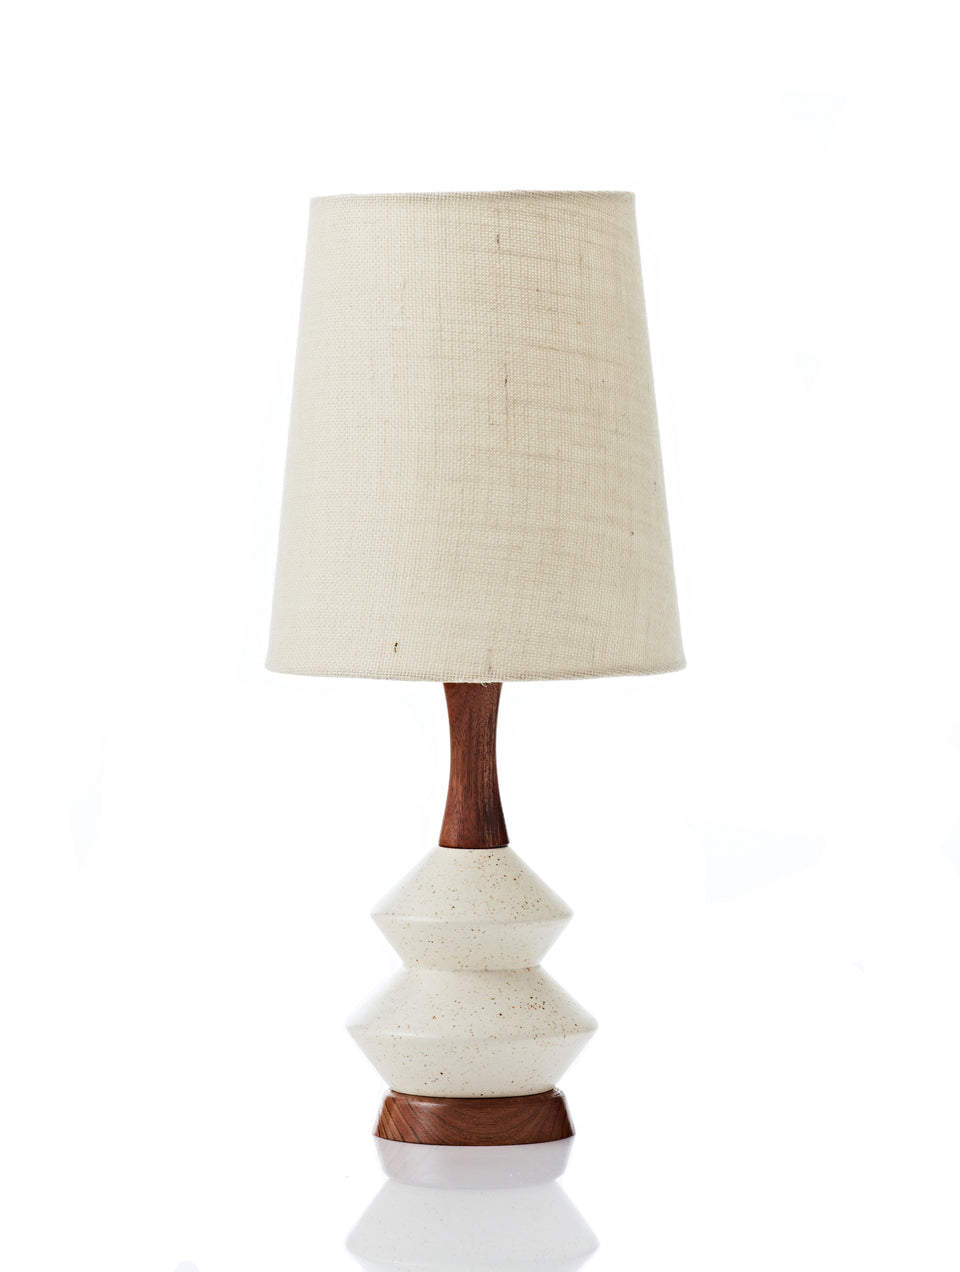 Athena Lamp • Small - Vanilla Hessian